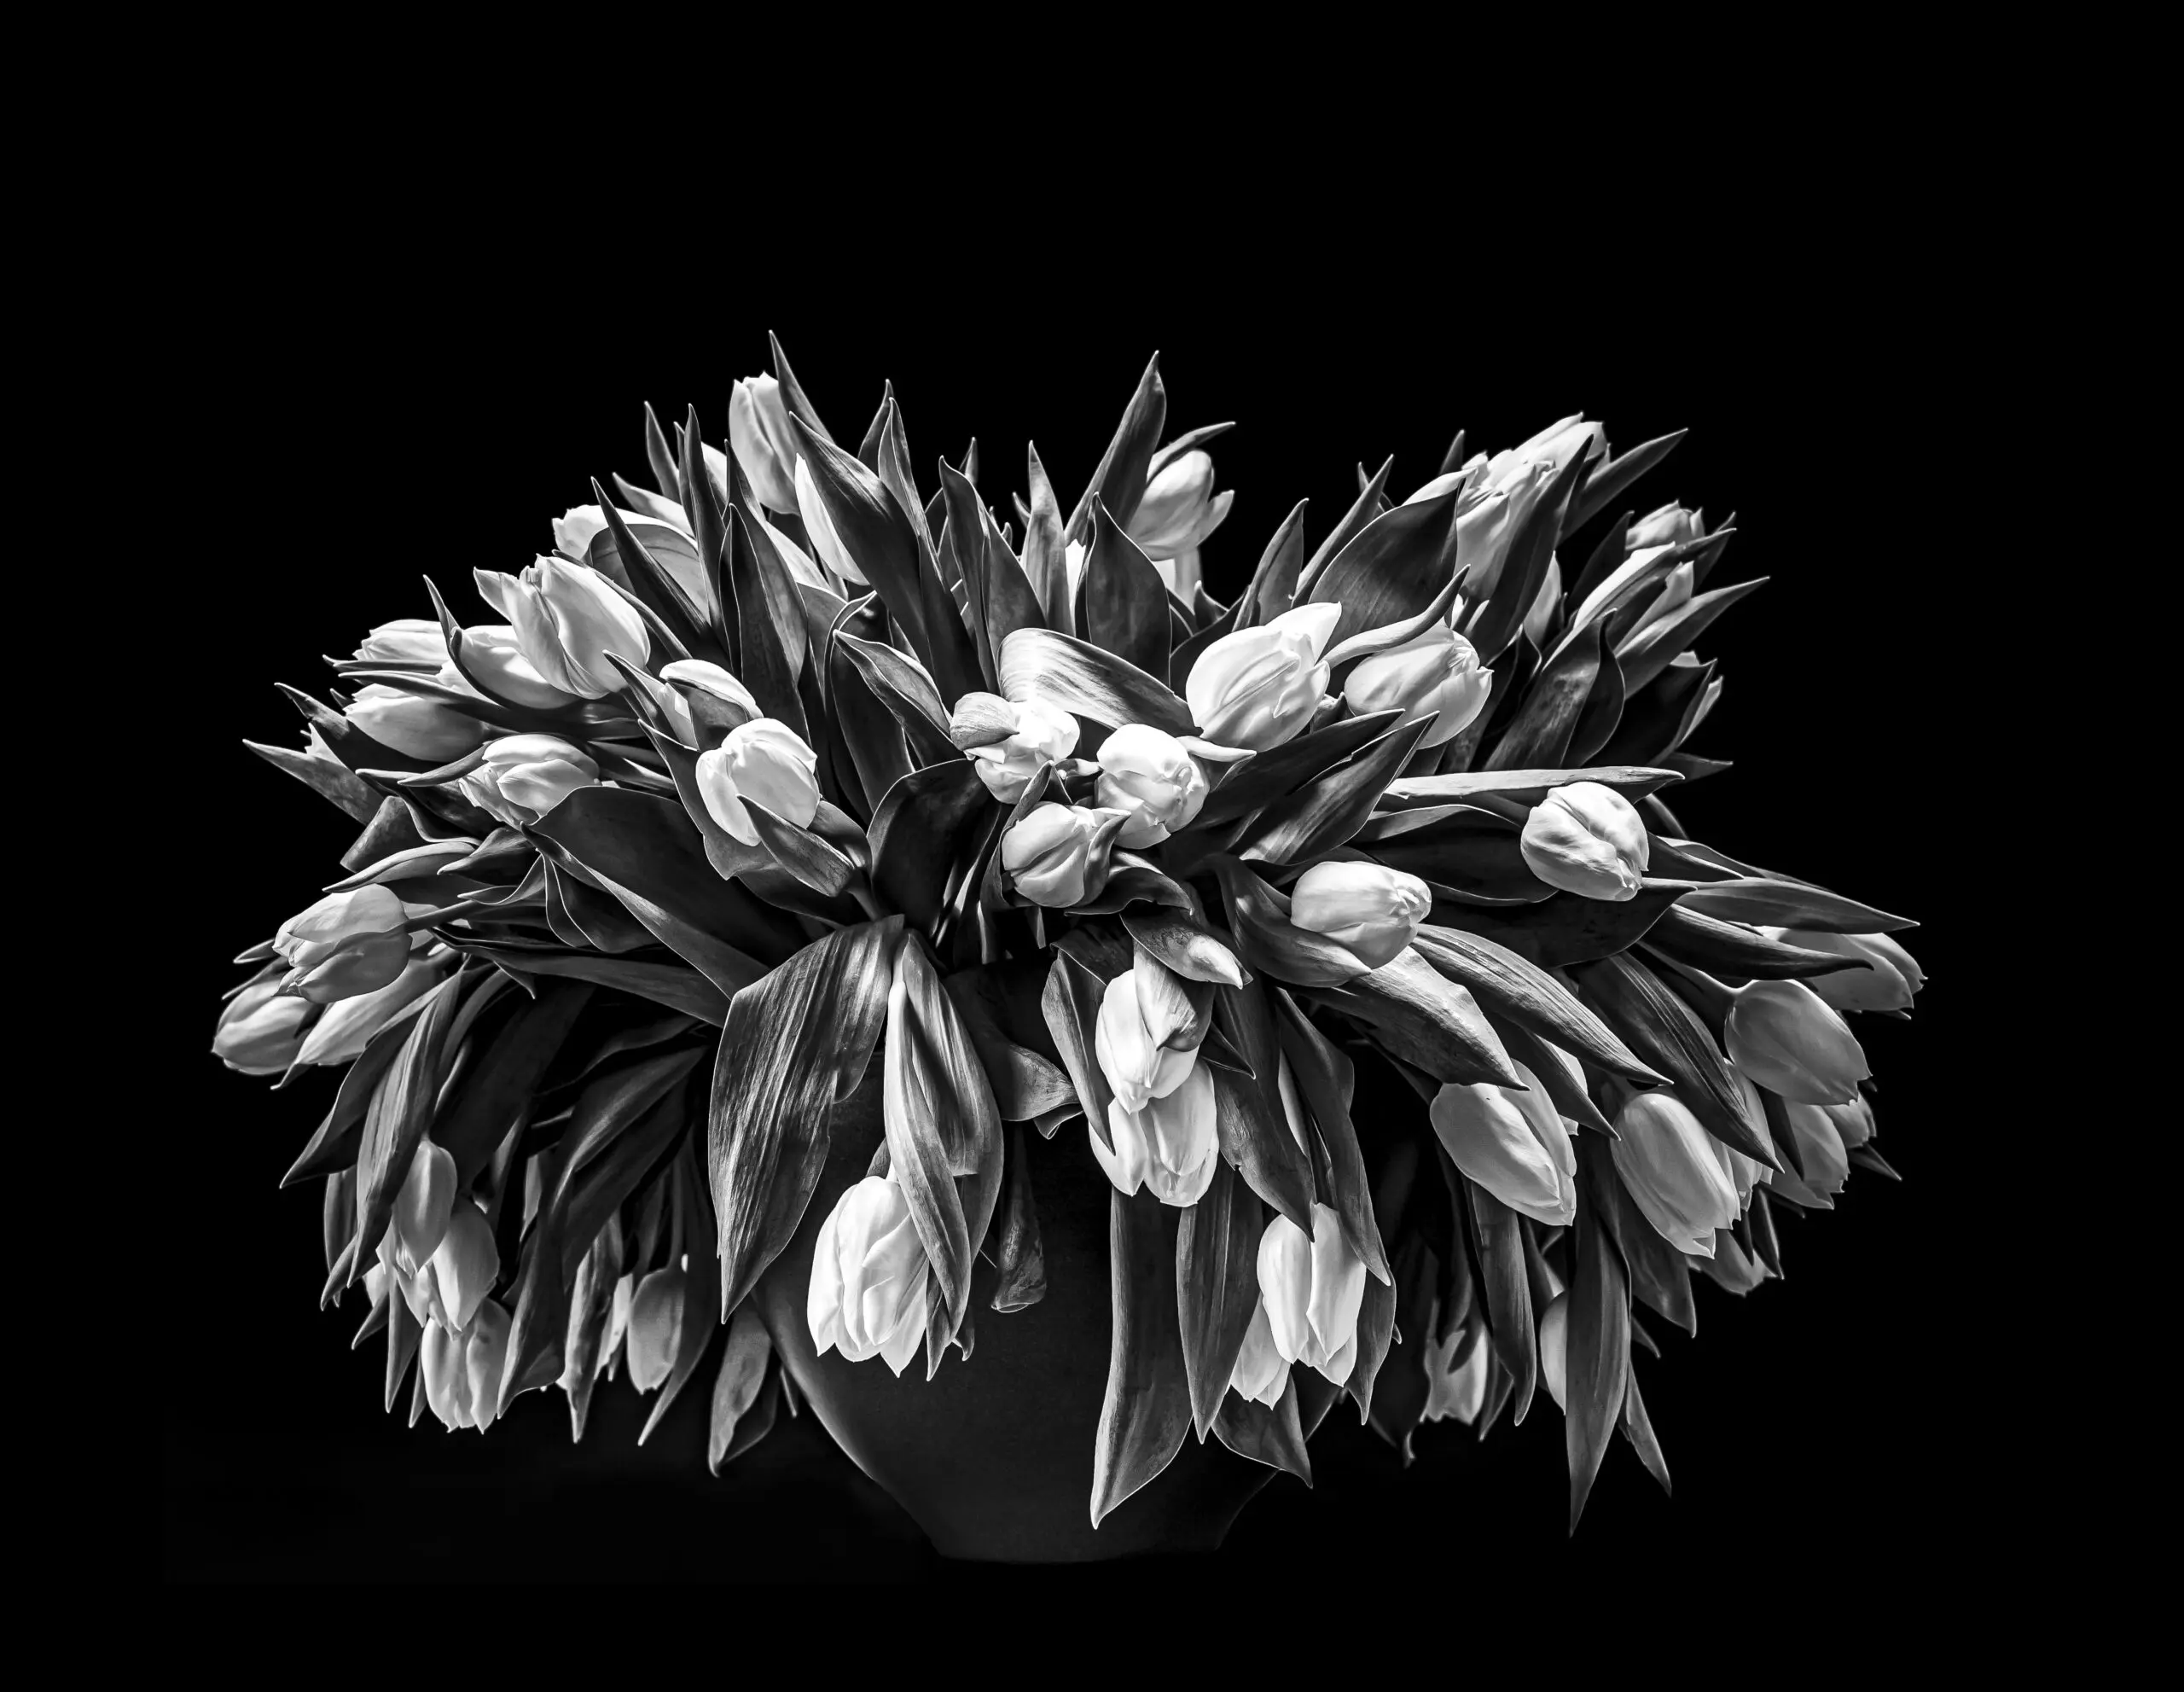 Tulpenstrauß in schwarz-weiß